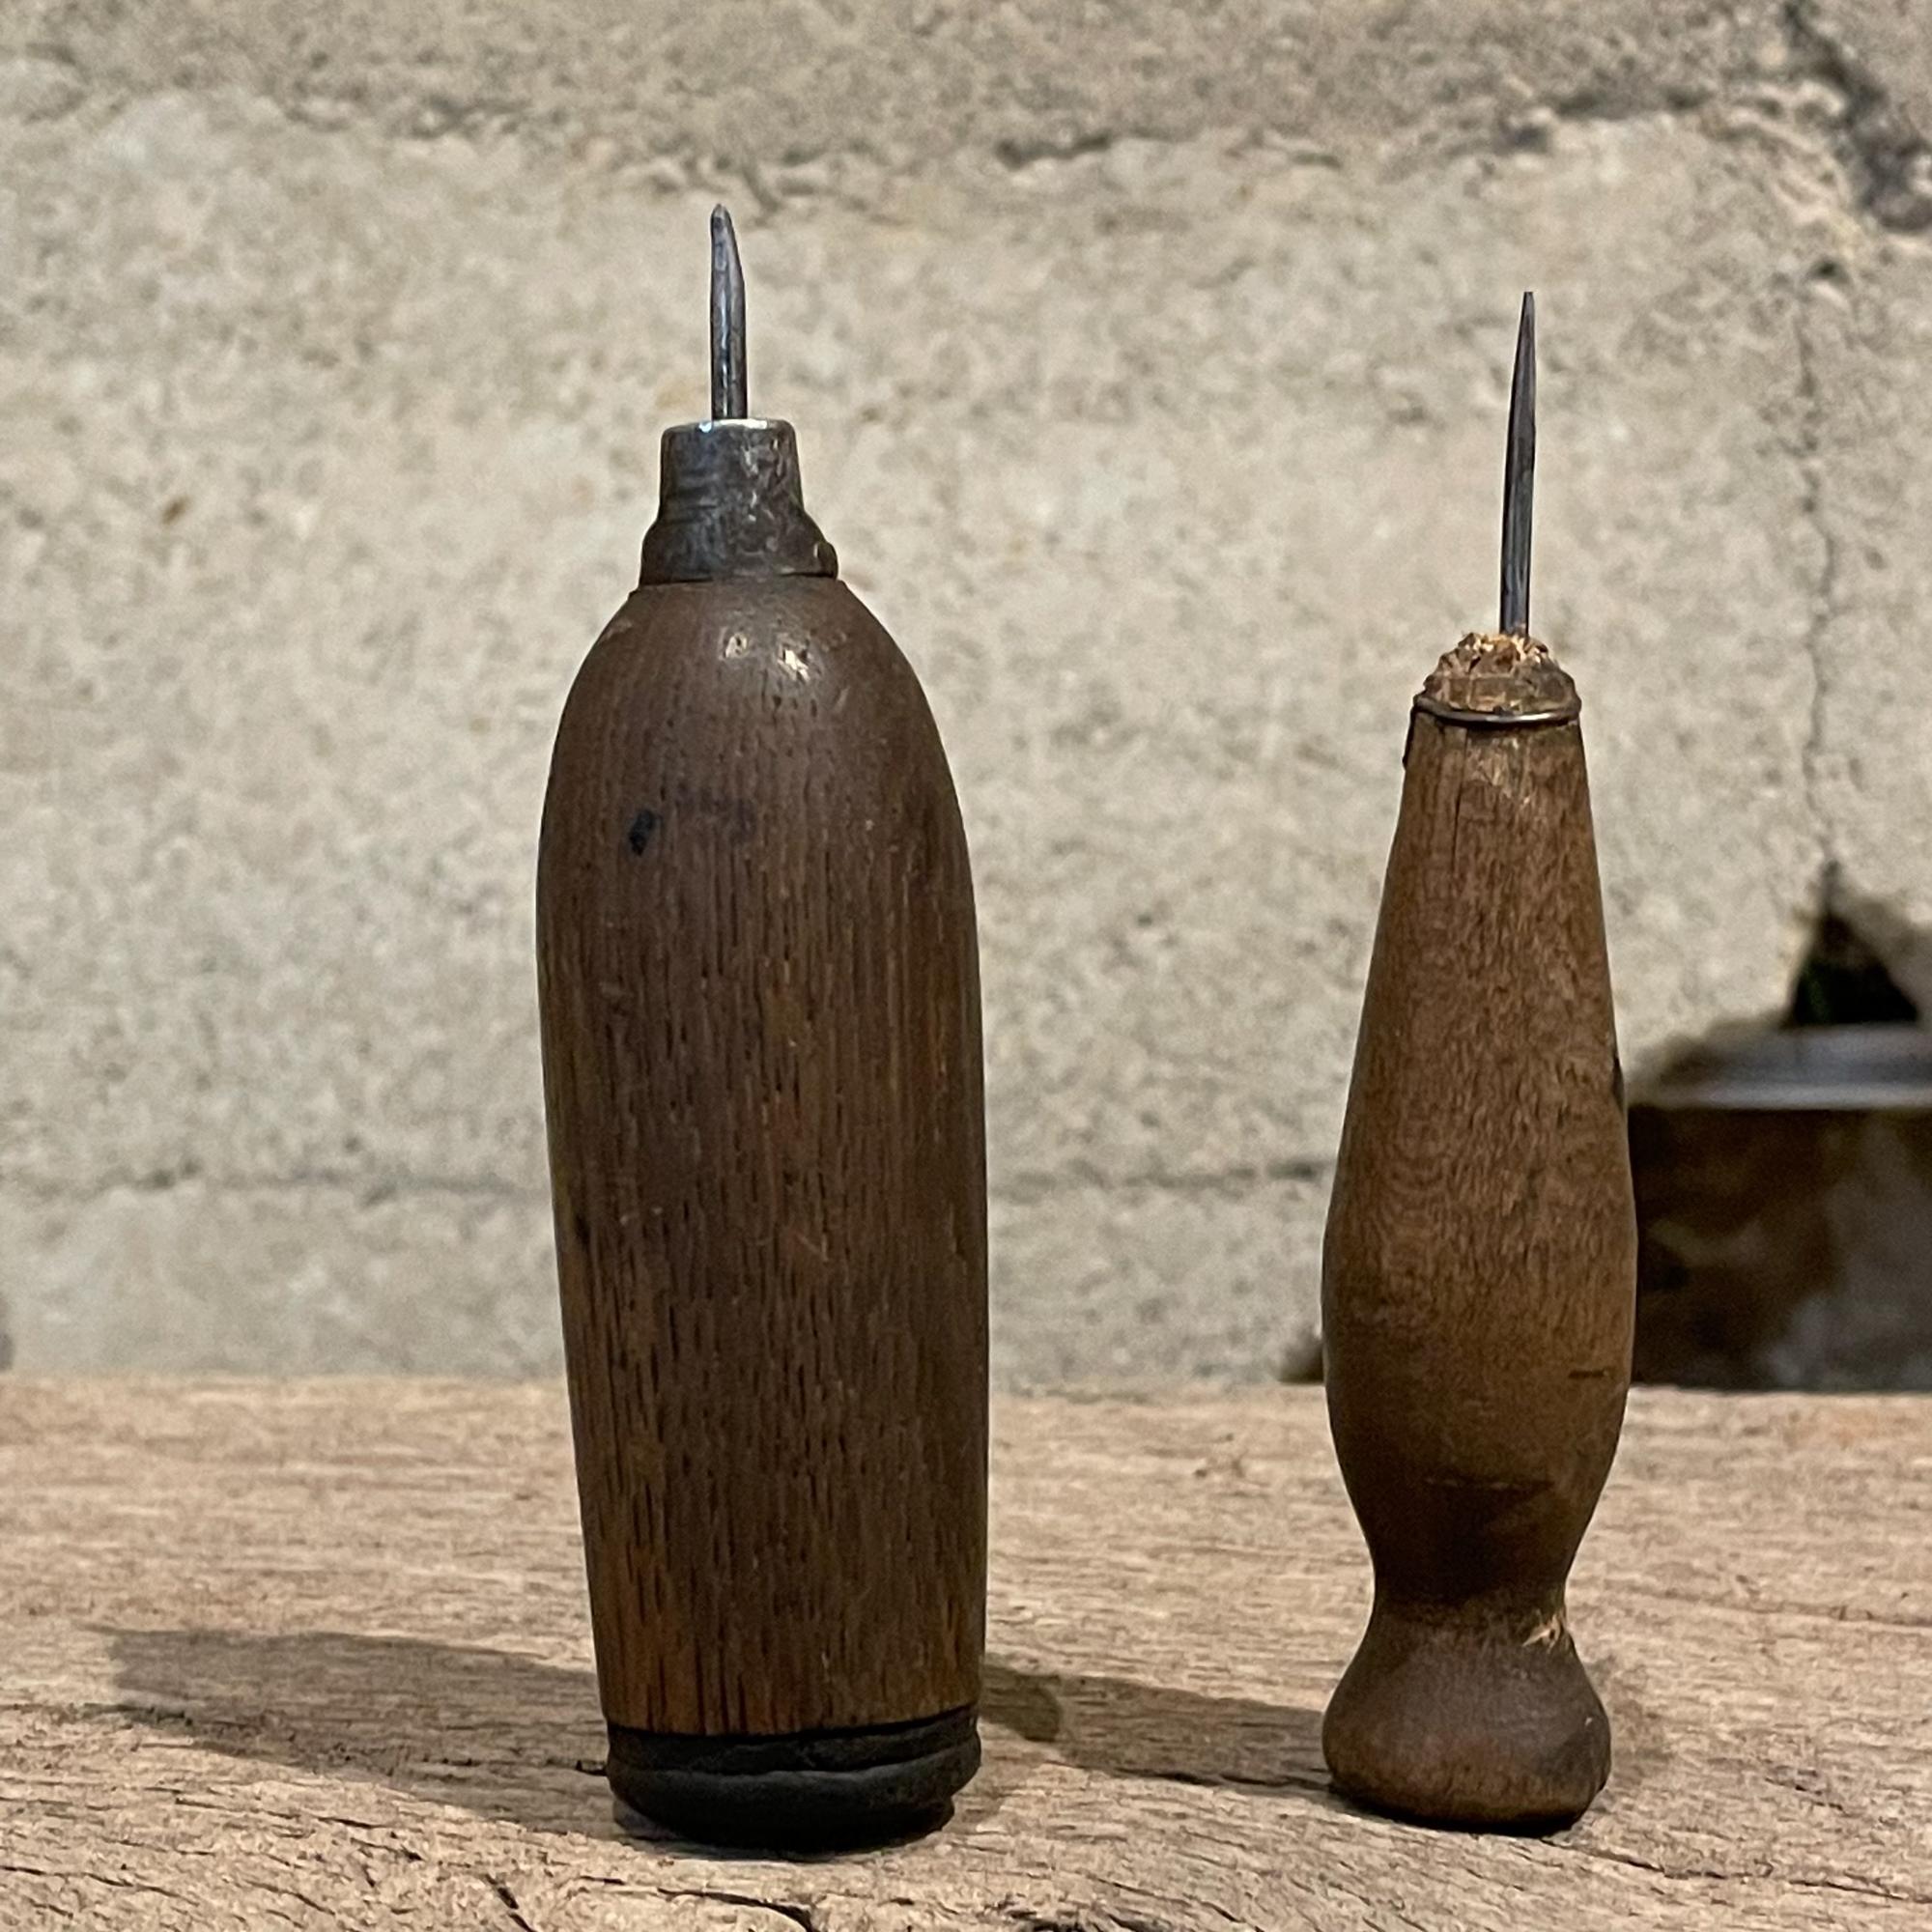 Industriel Outils de récupération de glace en bois rustique usés et usés par les intempéries - Outils de bar anciens pour boîtes à glace